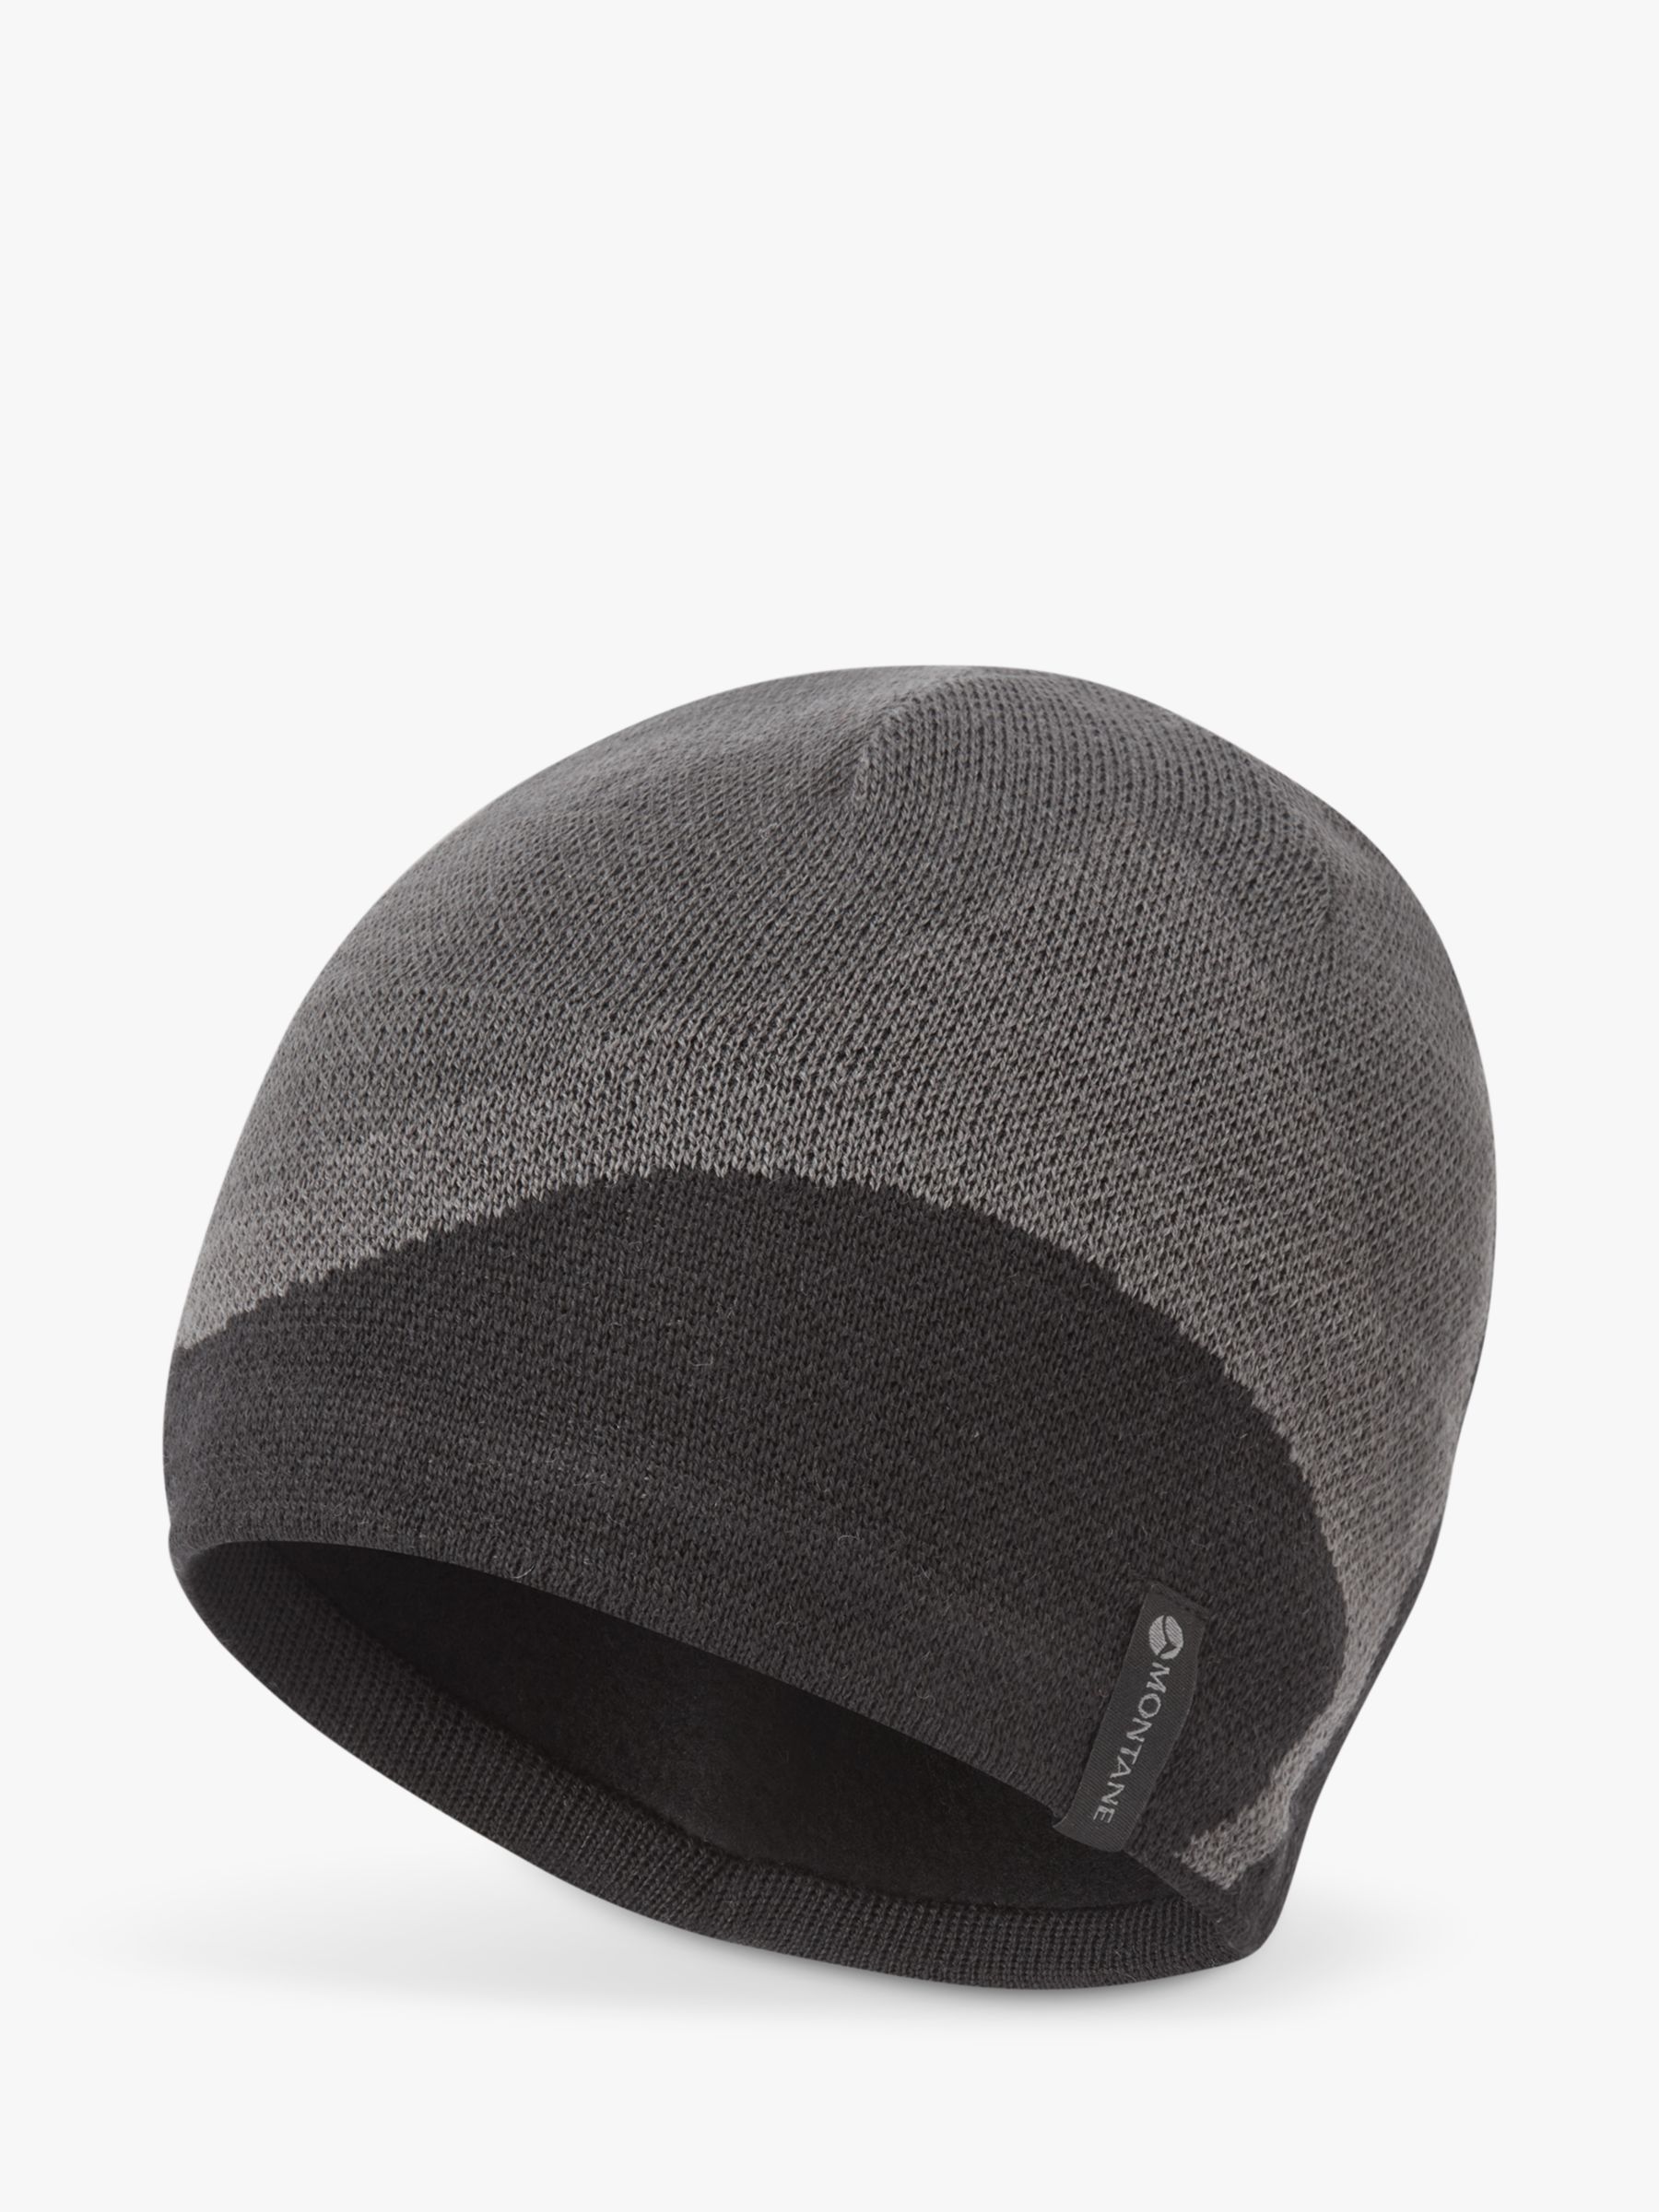 Шерстяная шапка-бини с логотипом Montane, черный шапка m